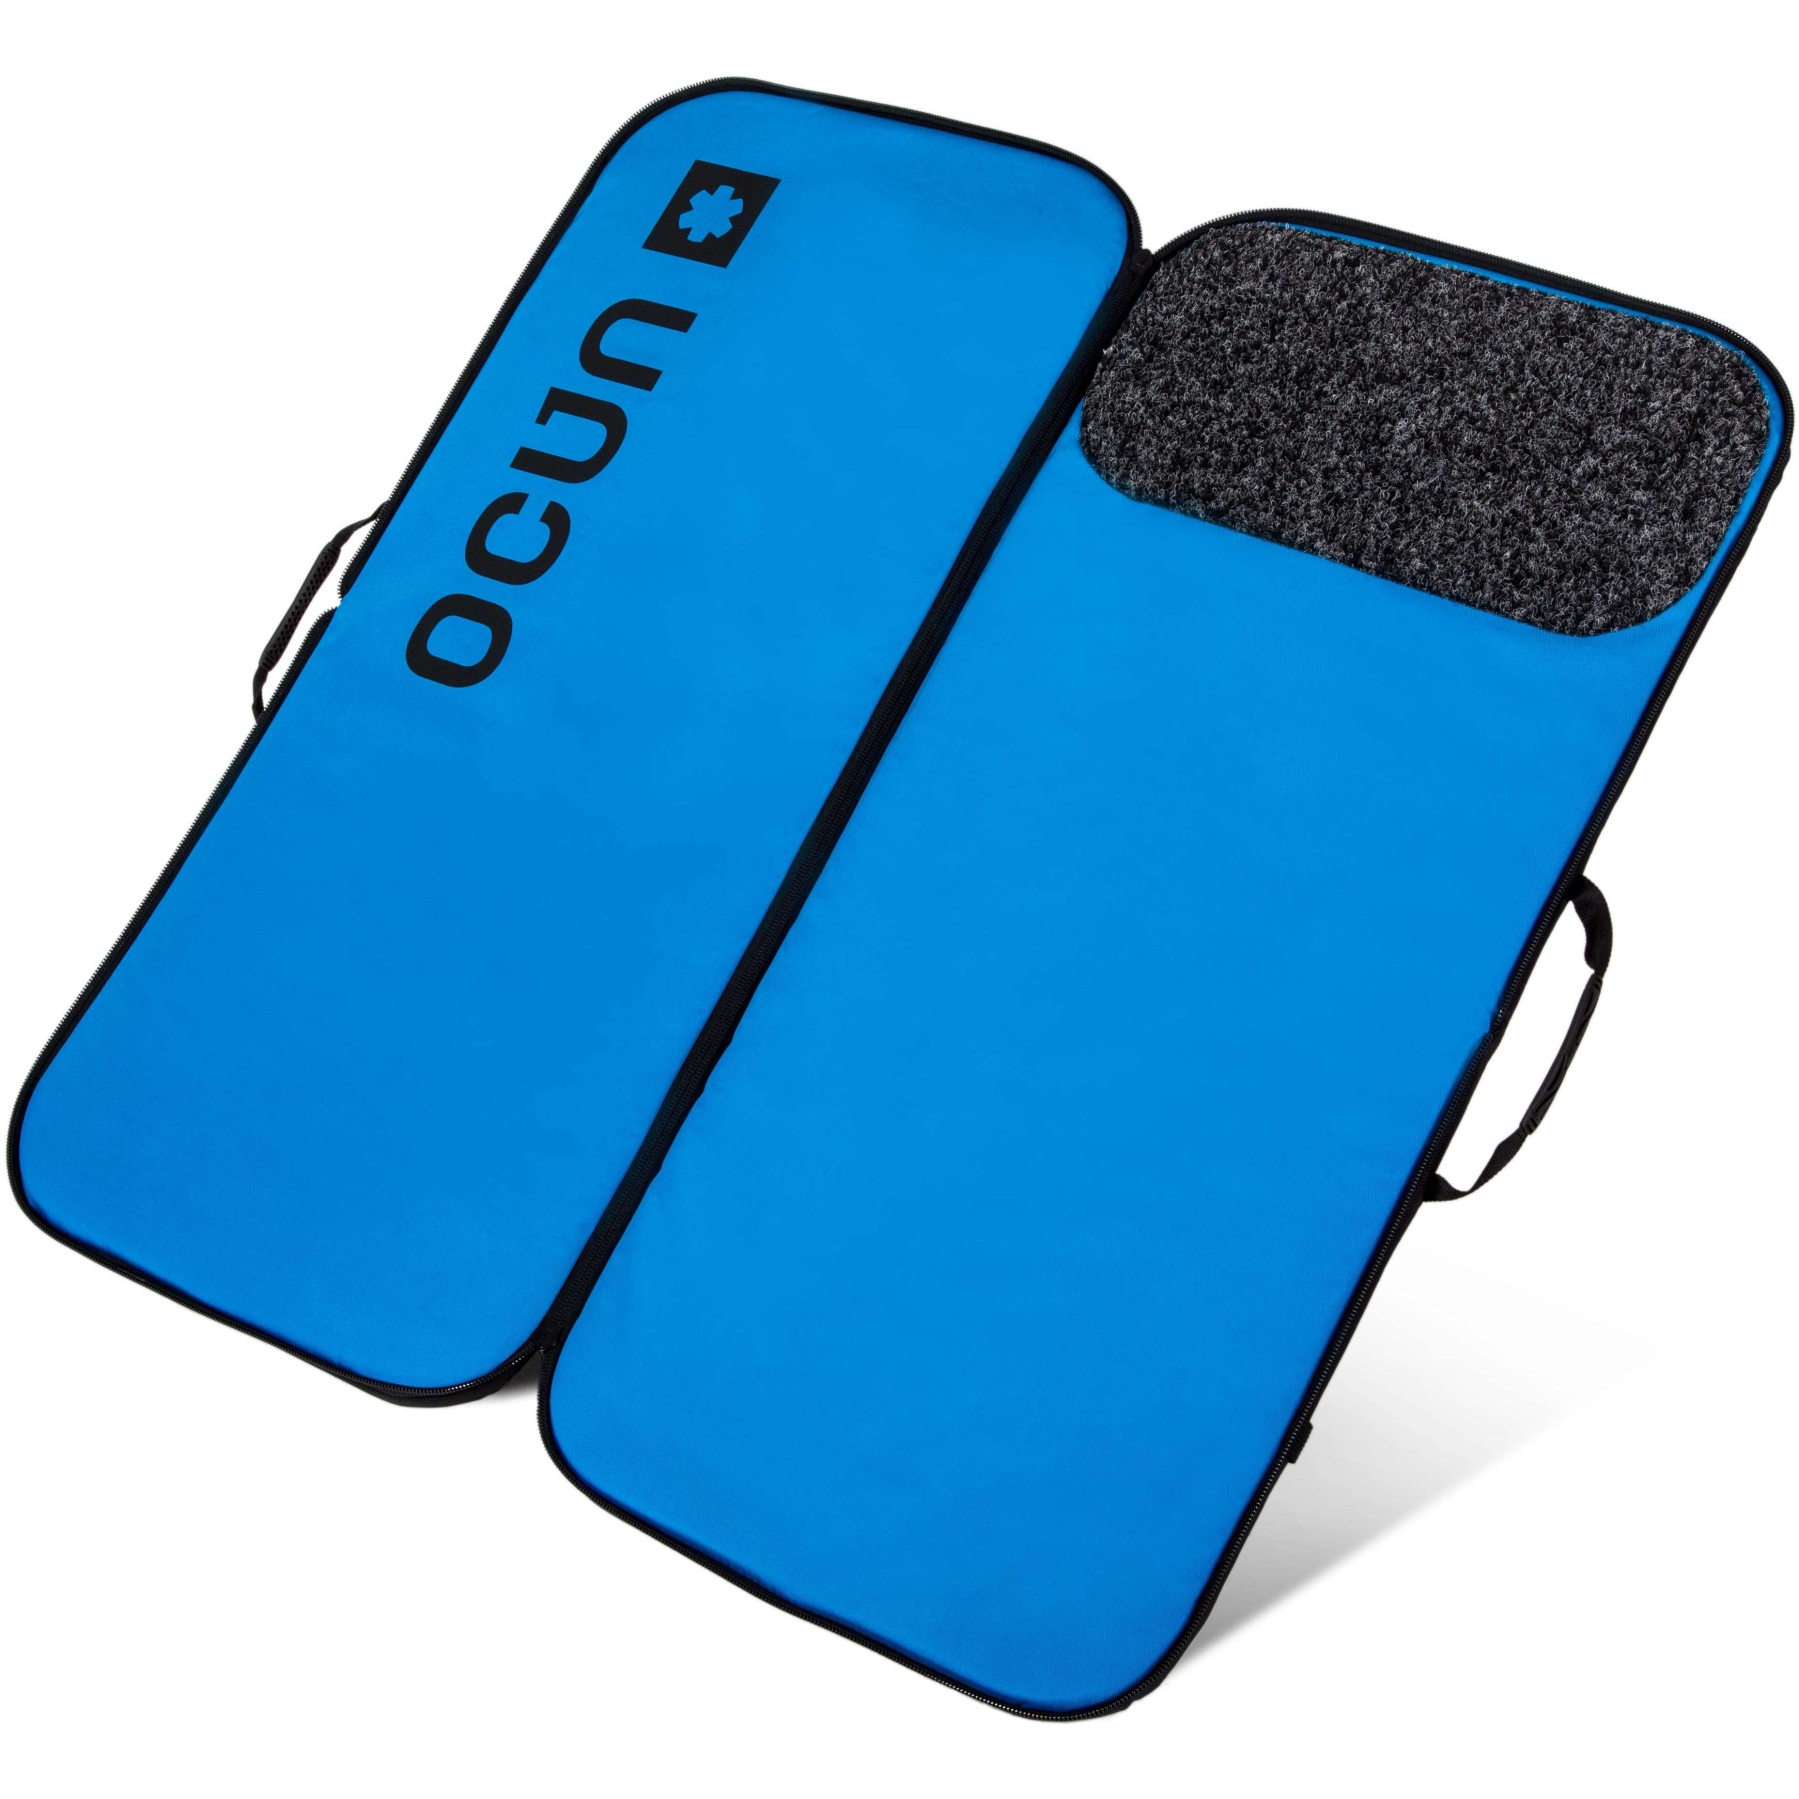 Productfoto van Ocún Sitcase Pad Crashpad - light blue